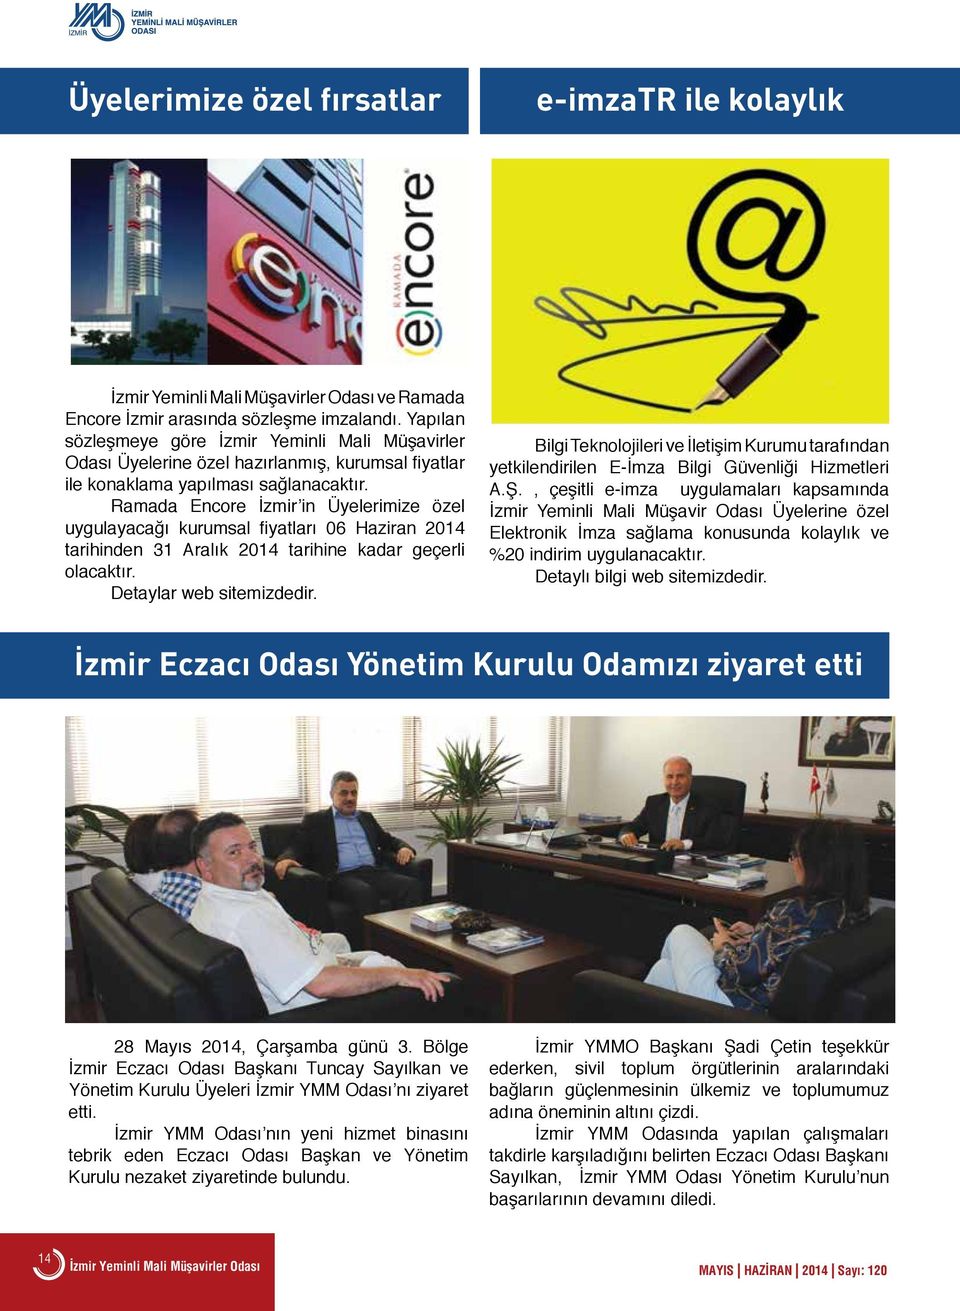 Ramada Encore İzmir in Üyelerimize özel uygulayacağı kurumsal fiyatları 06 Haziran 2014 tarihinden 31 Aralık 2014 tarihine kadar geçerli olacaktır. Detaylar web sitemizdedir.